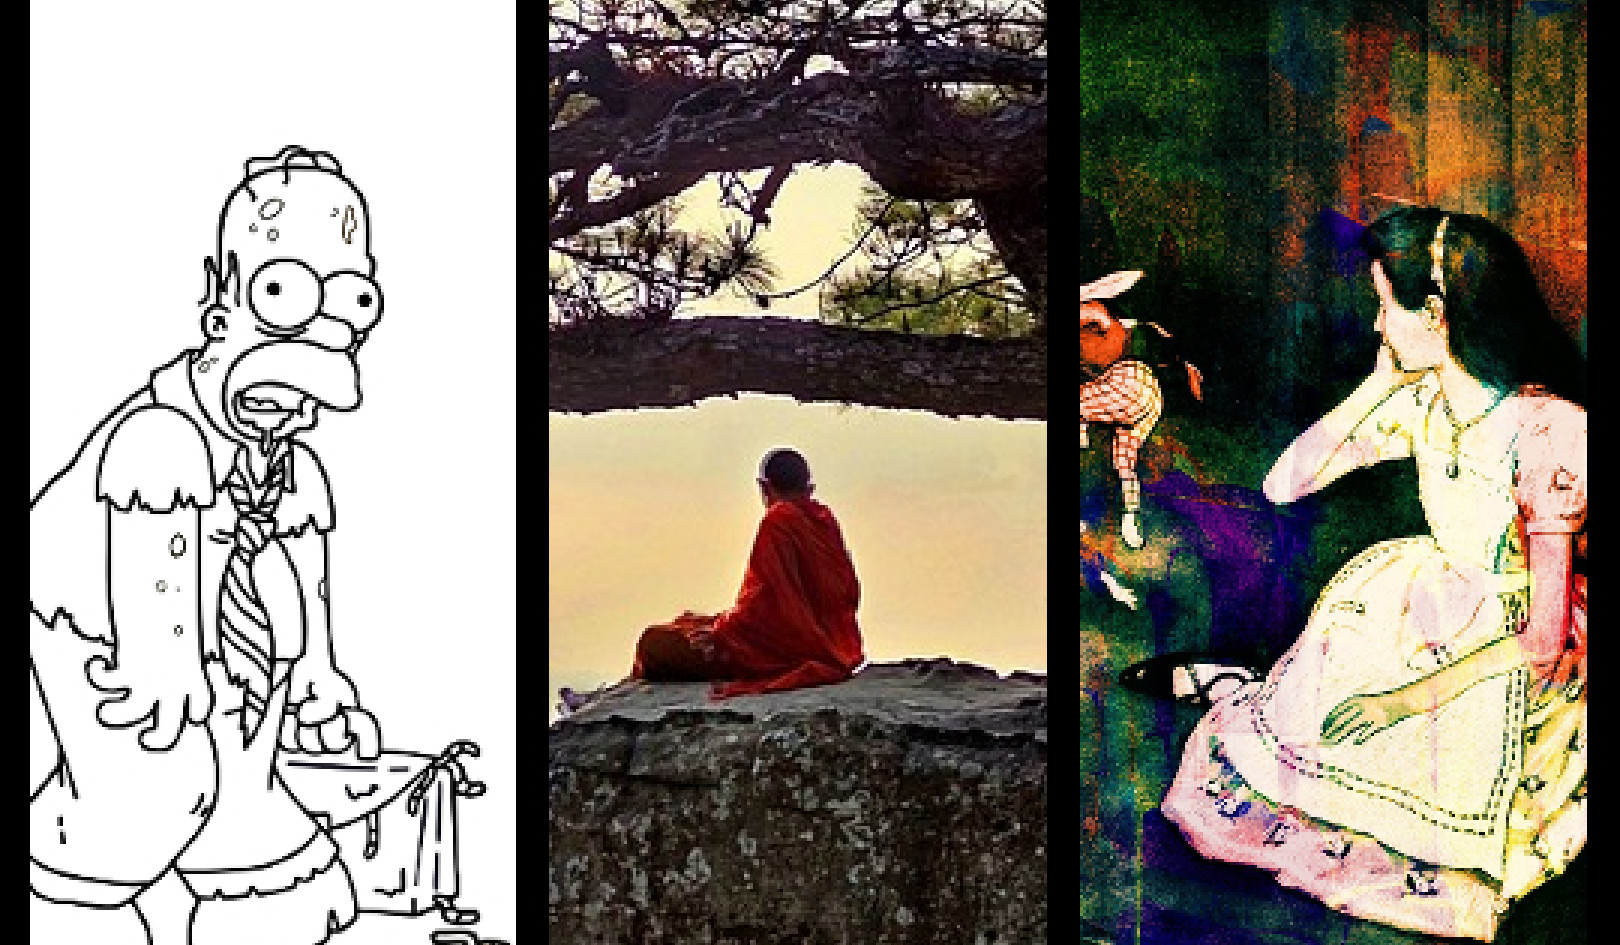 保持好奇，而不是愤怒：荷马、佛陀和爱丽丝的教诲